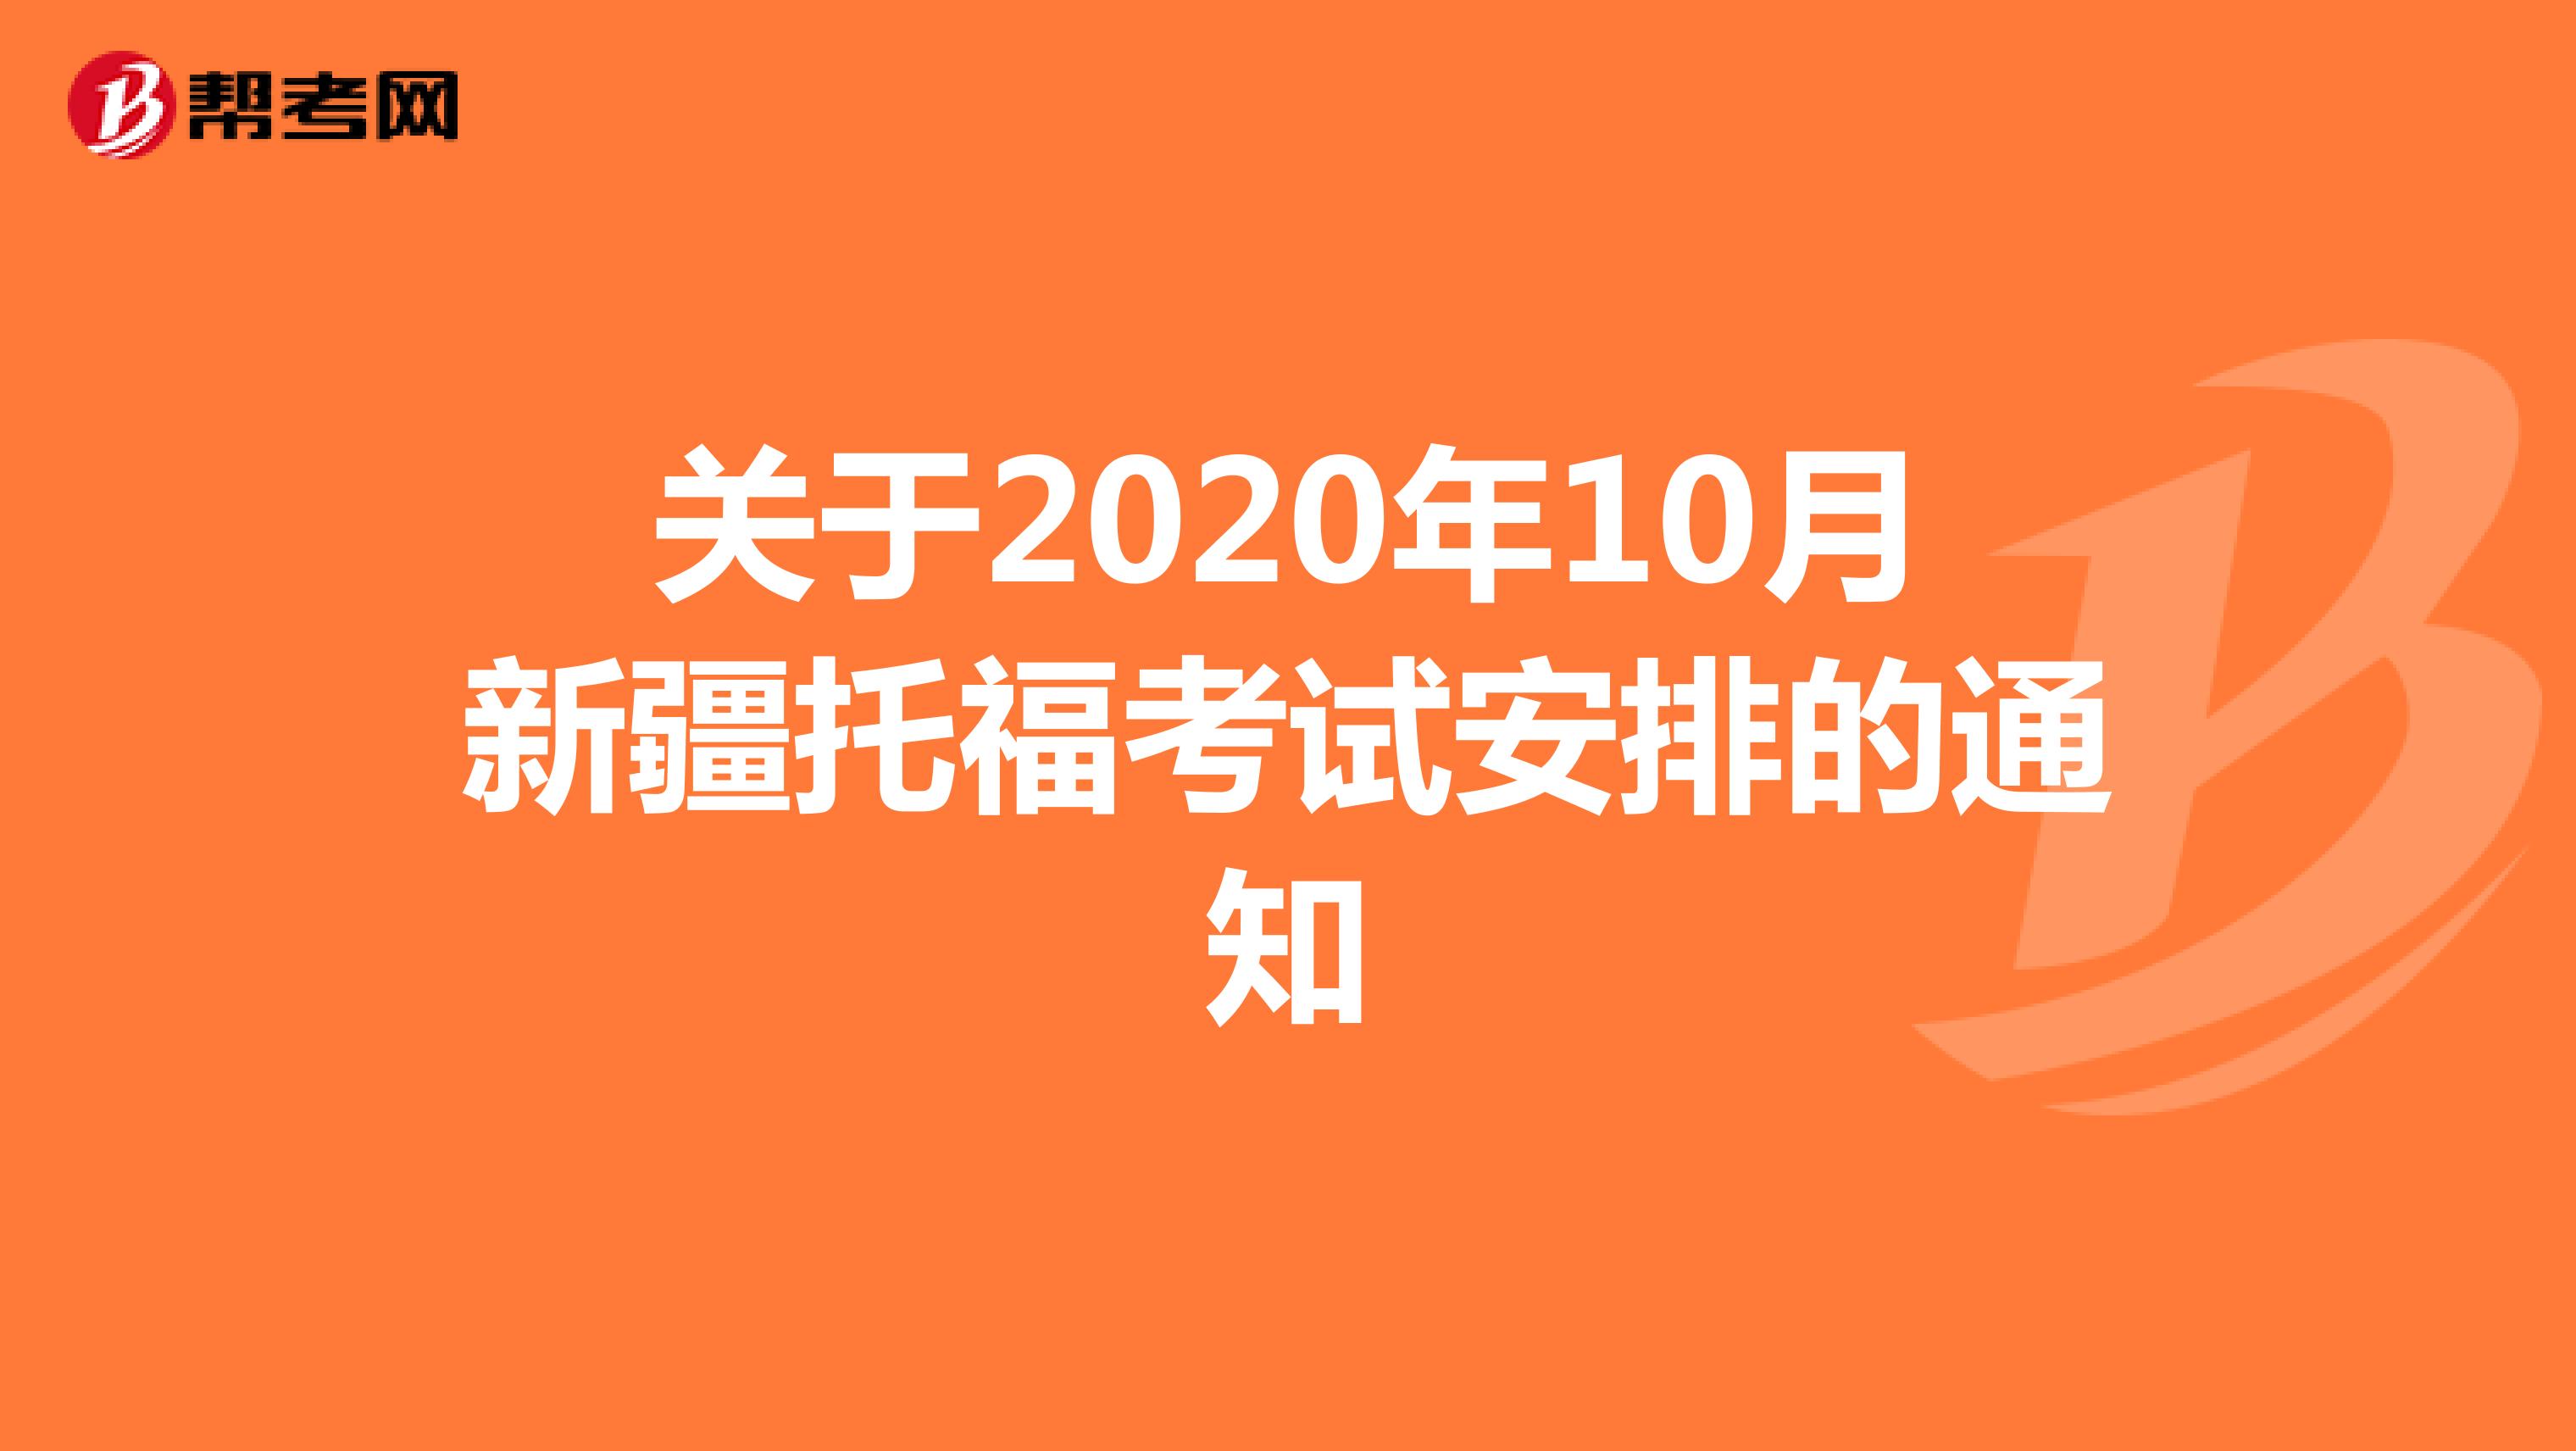 关于2020年10月新疆托福考试安排的通知